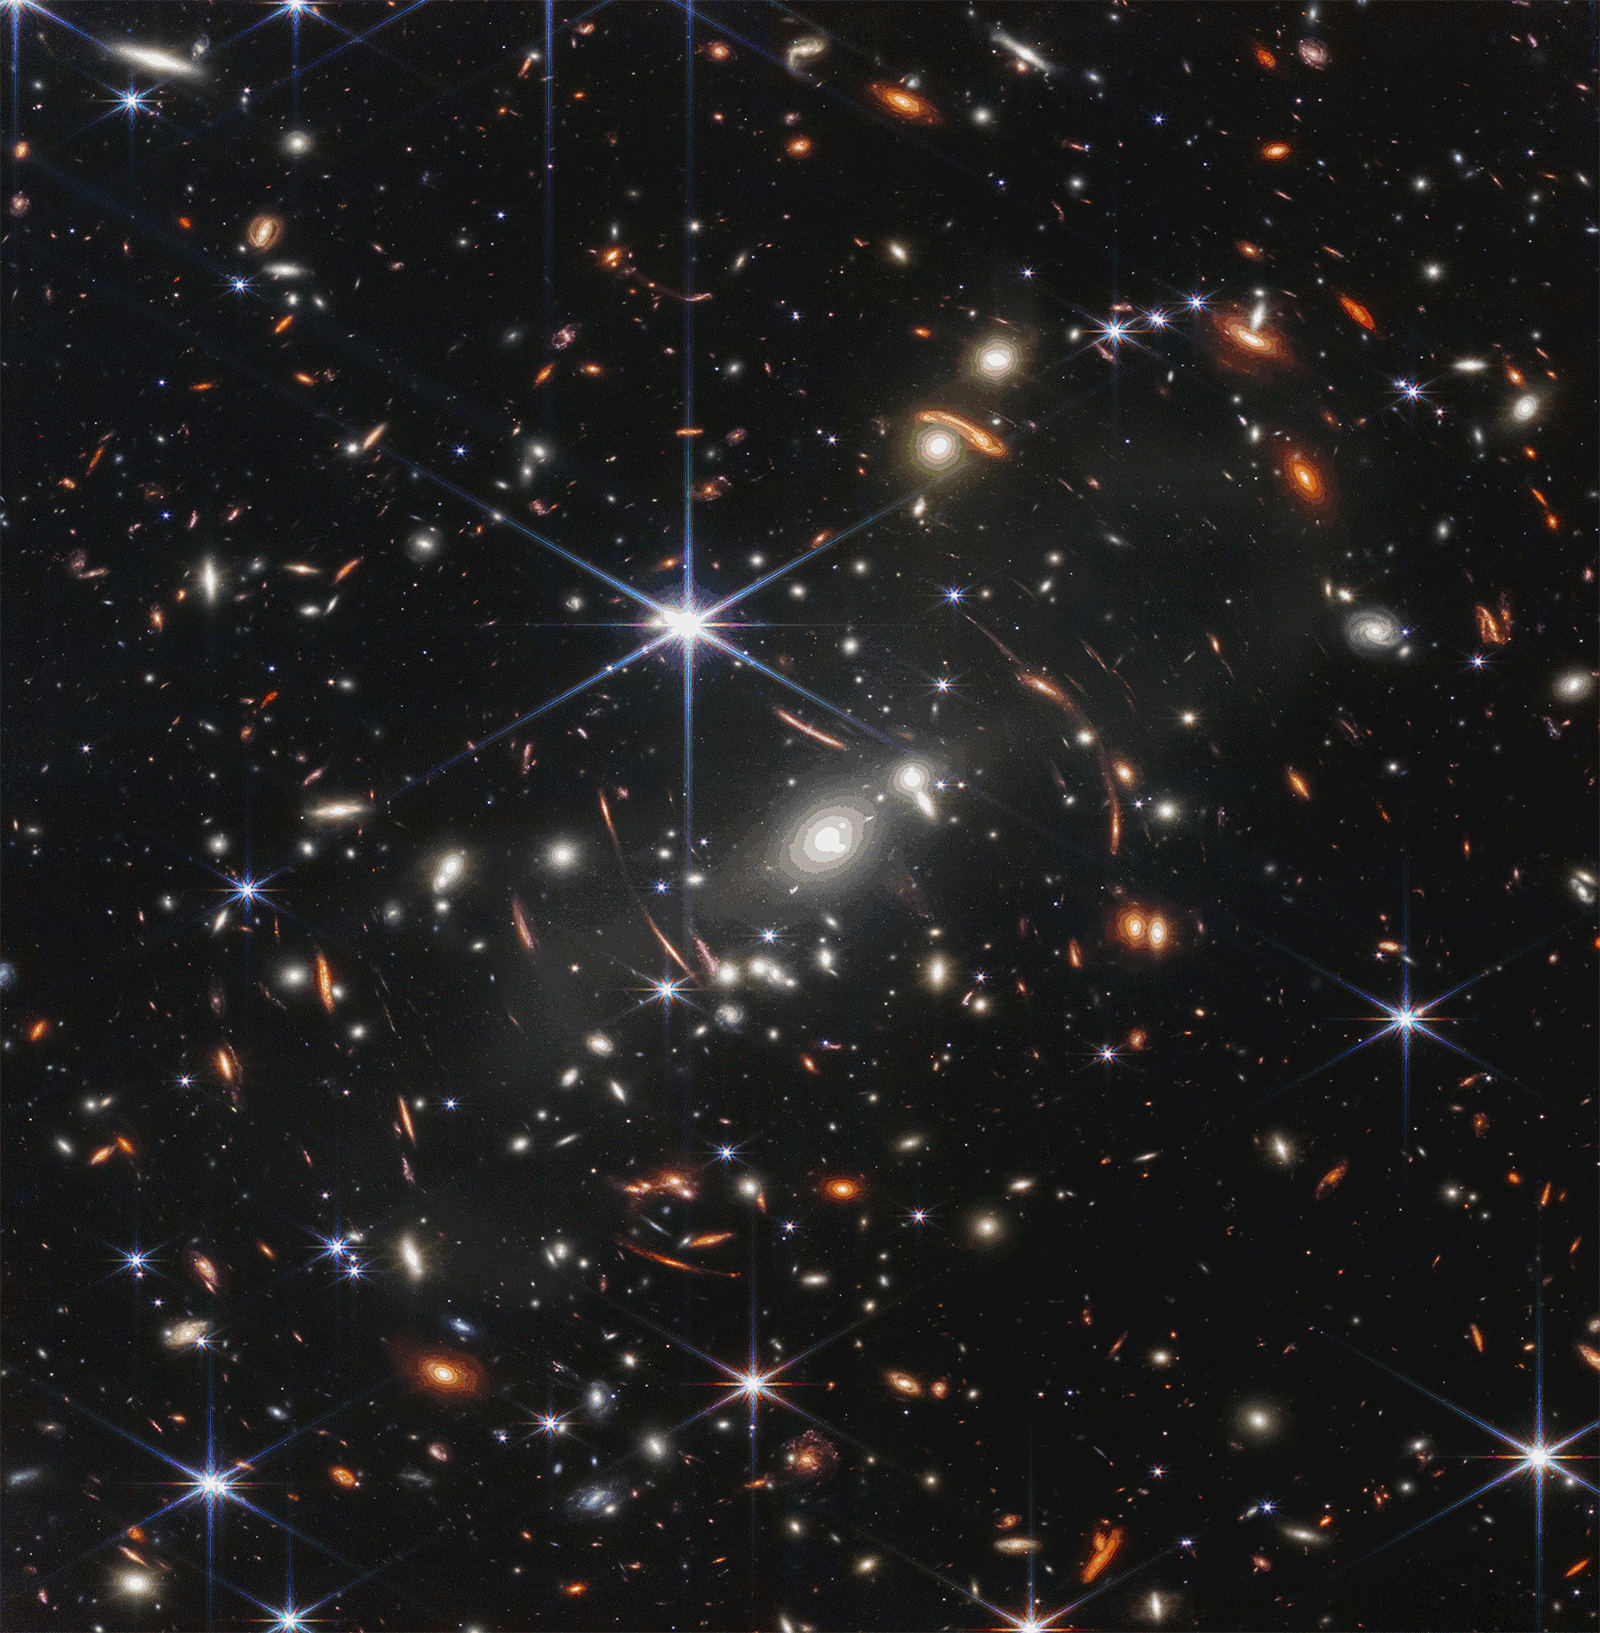 Campo profundo James Webb e Hubble